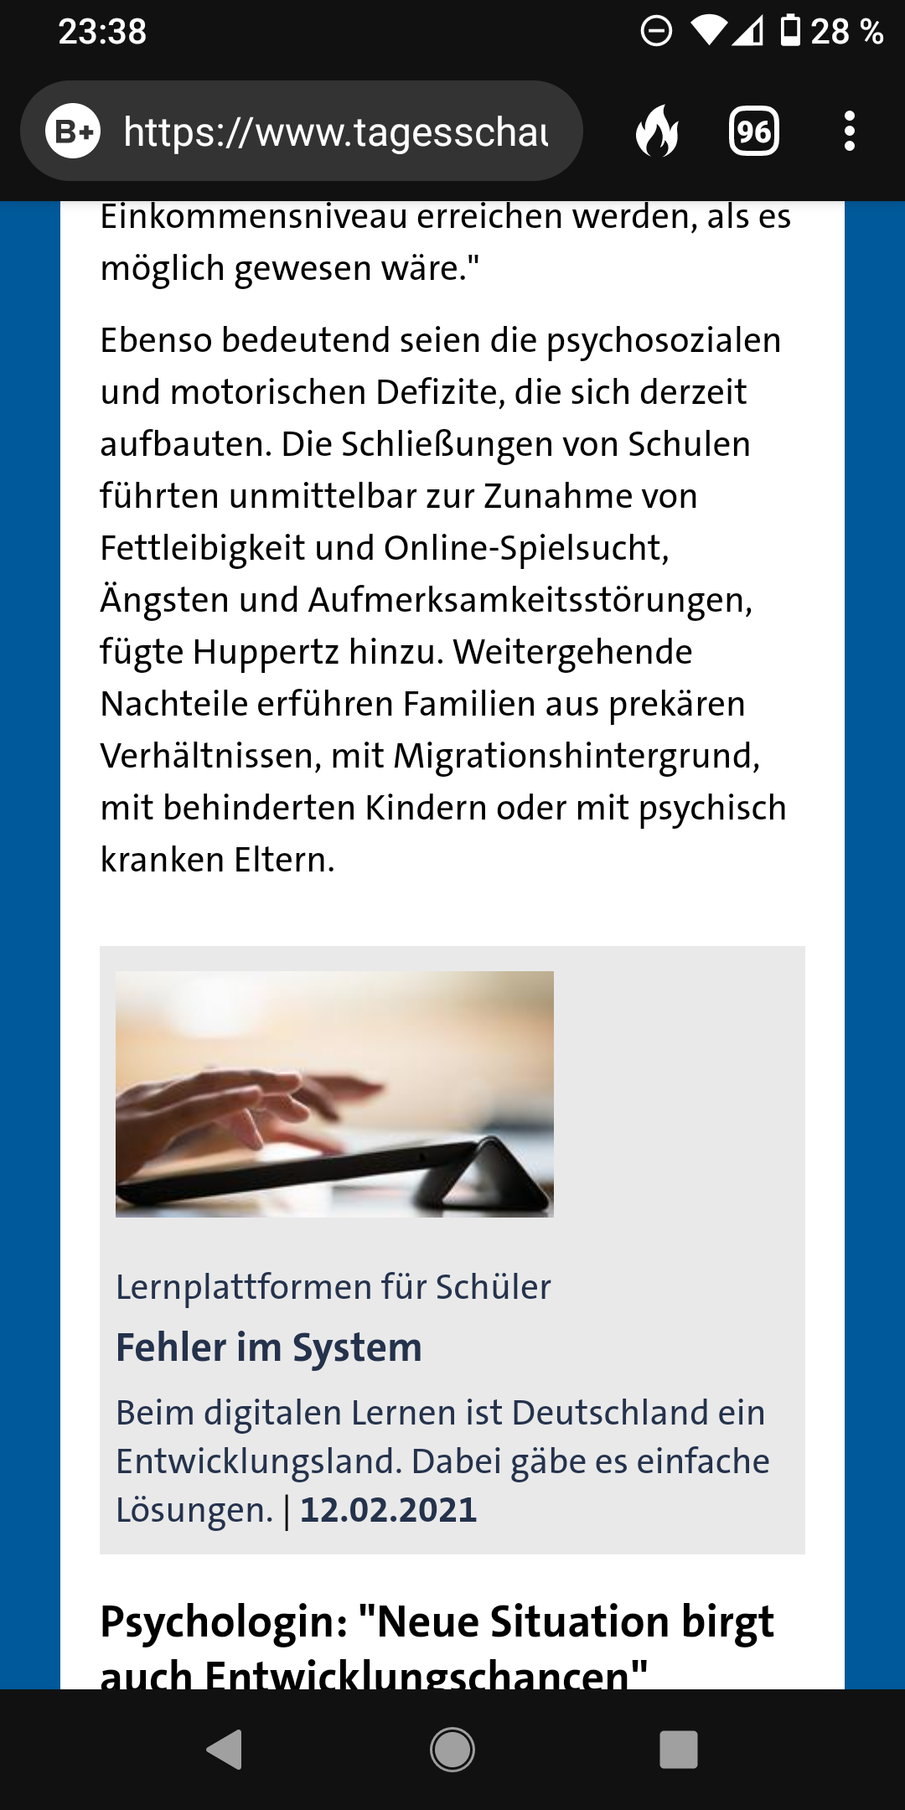 Screenshot von Tagesschau.de vom 20.01.2021, der einen Artikel über das digitale Lernen vom 12.02.2021 verlinkt